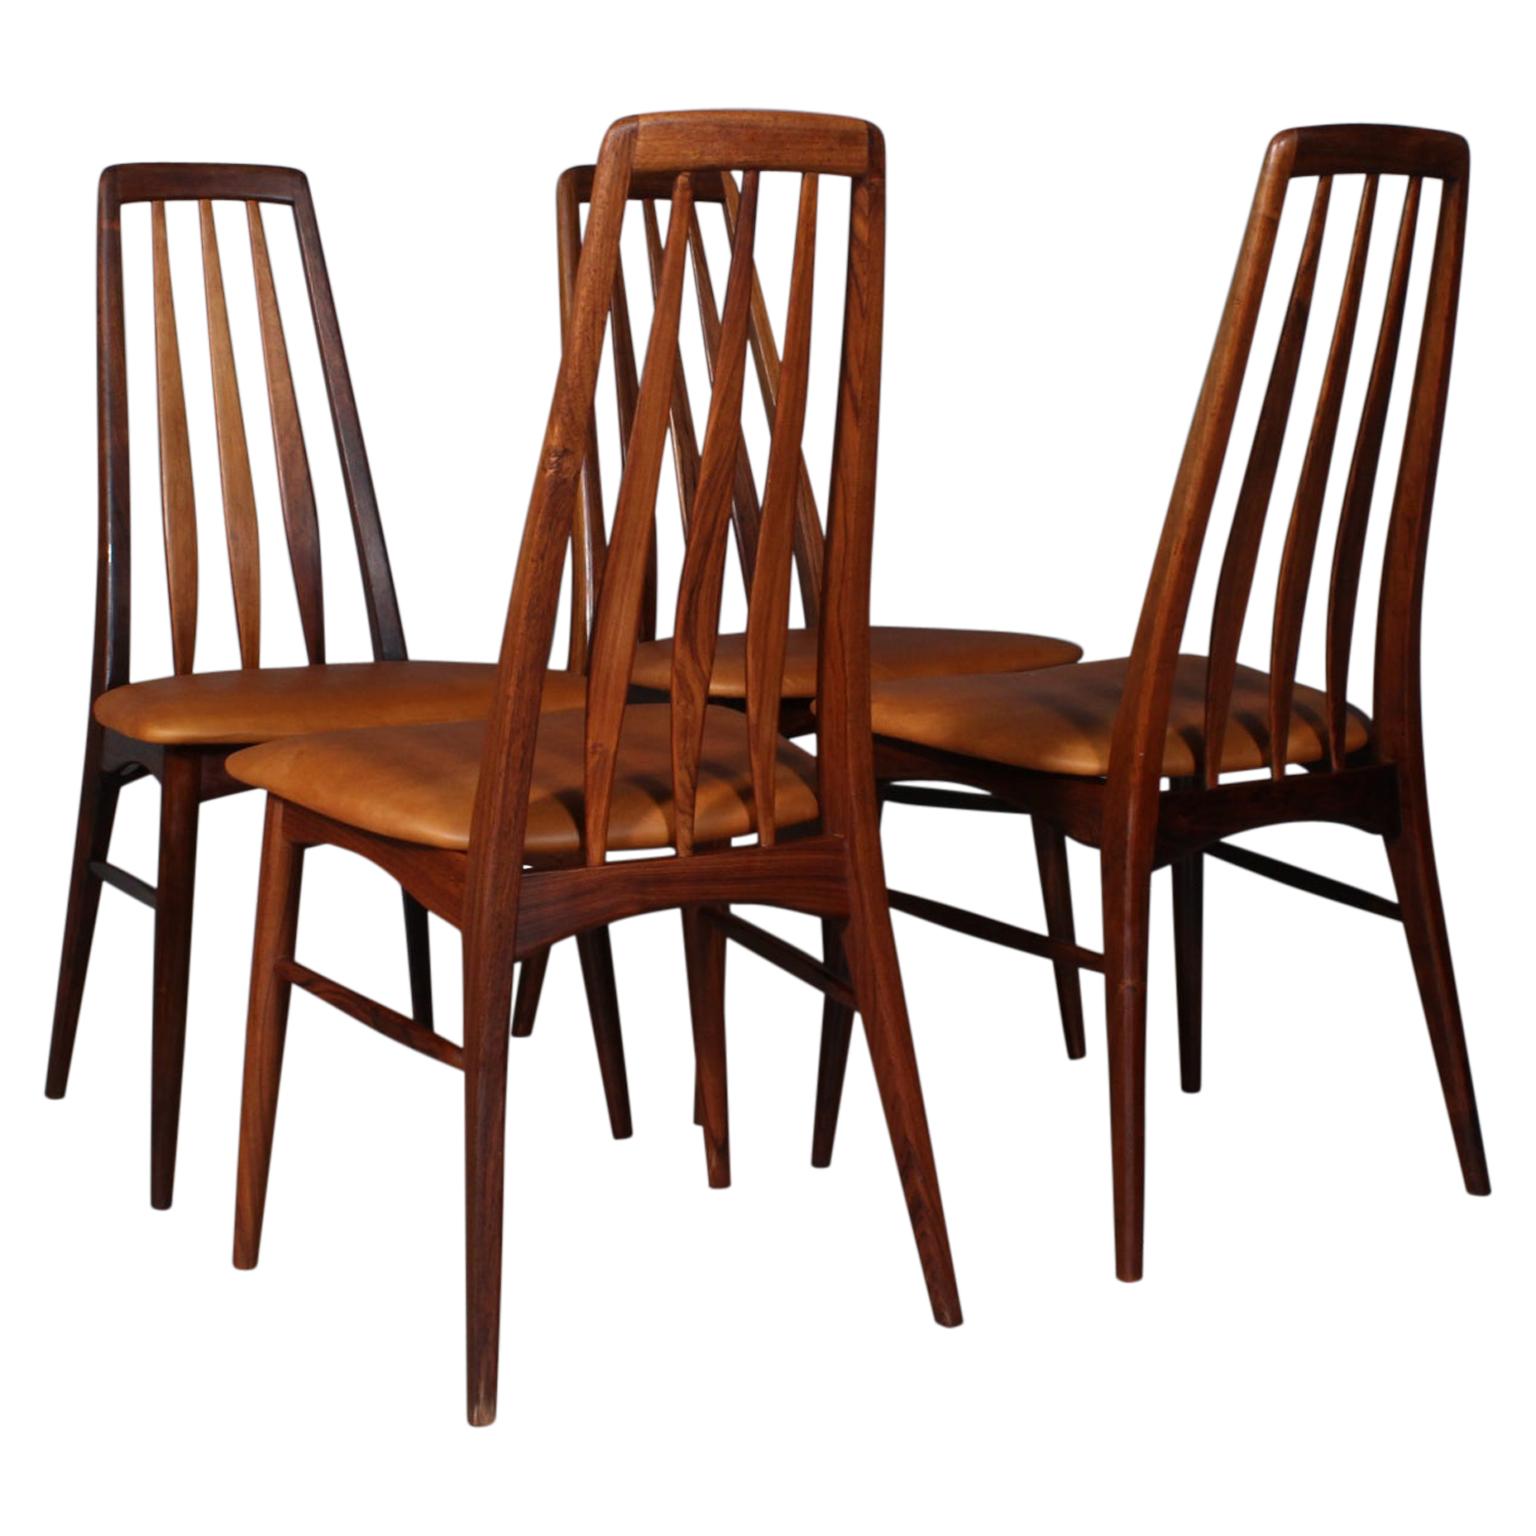 Niels Koefoed Dining Chairs, Model "Eva", Rosewood, 1960s